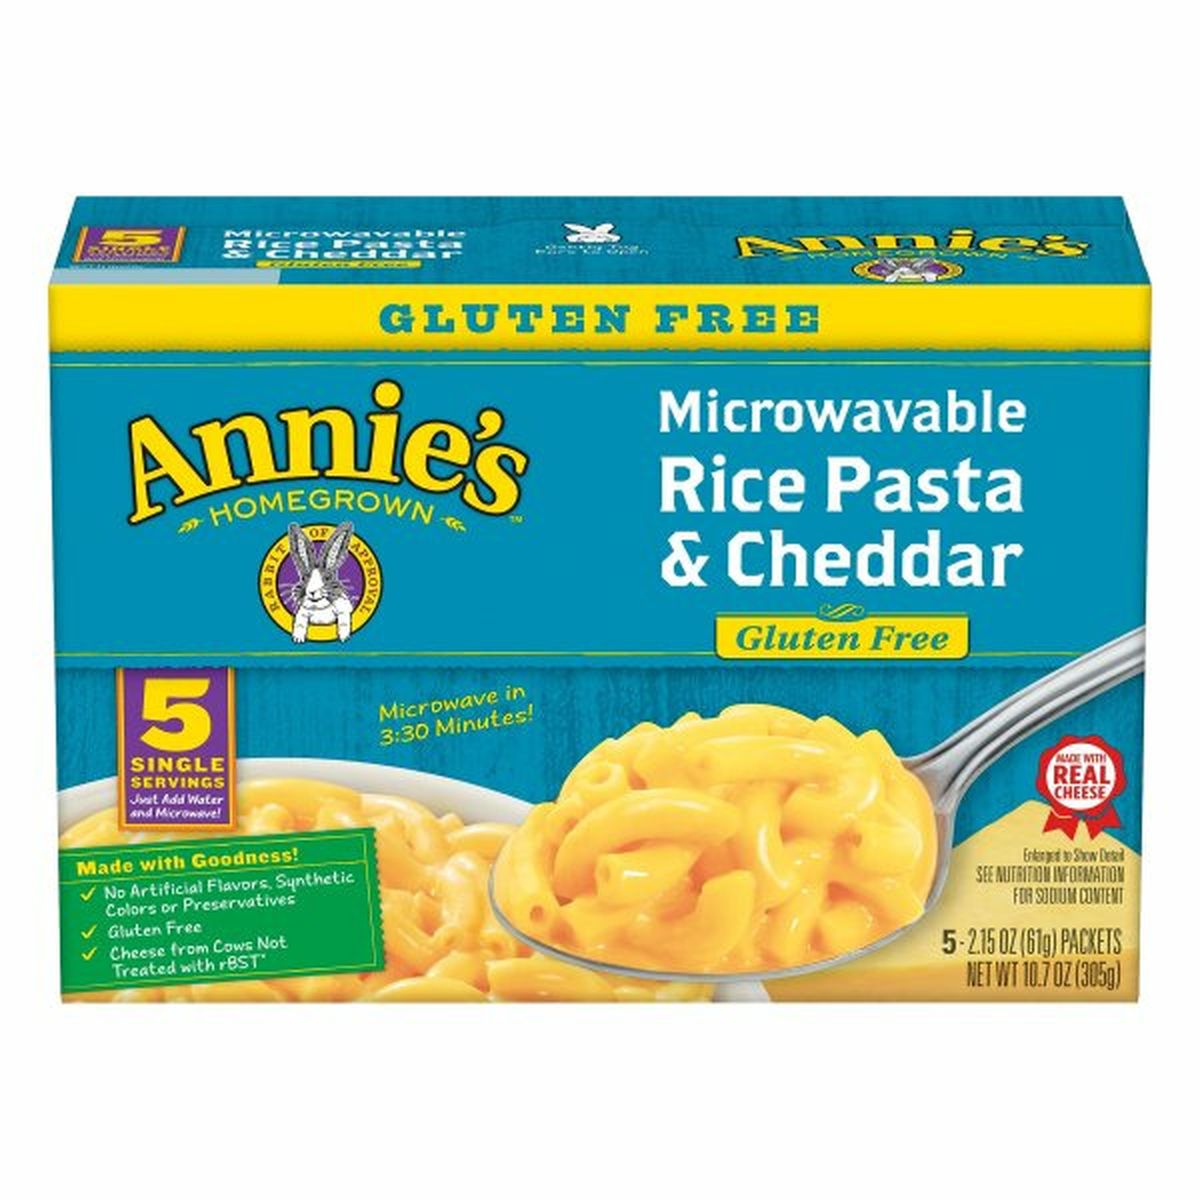 Calories in Annie's Rice Pasta & Cheddar, Gluten Free